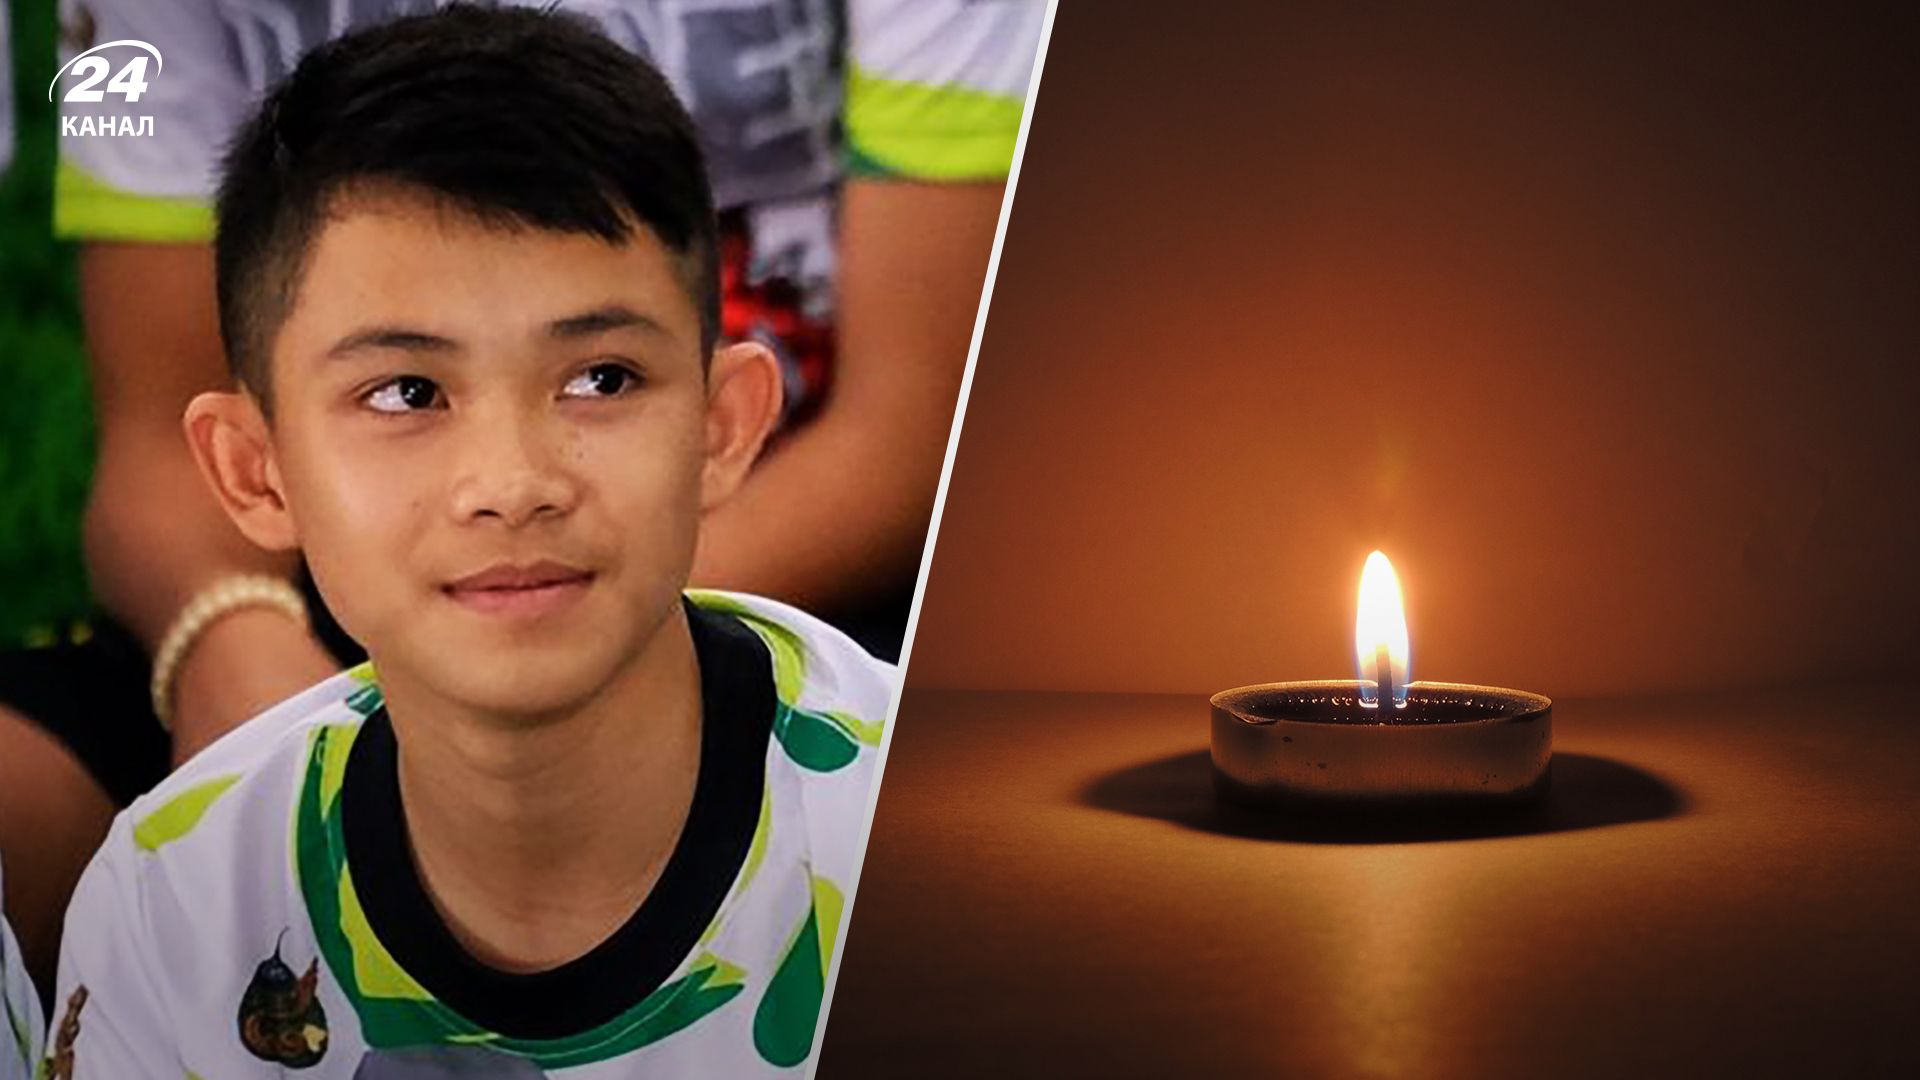 Дуангпетч Промтеп умер в Великобритании - его спасли из пещеры в Таиланде в 2018 году